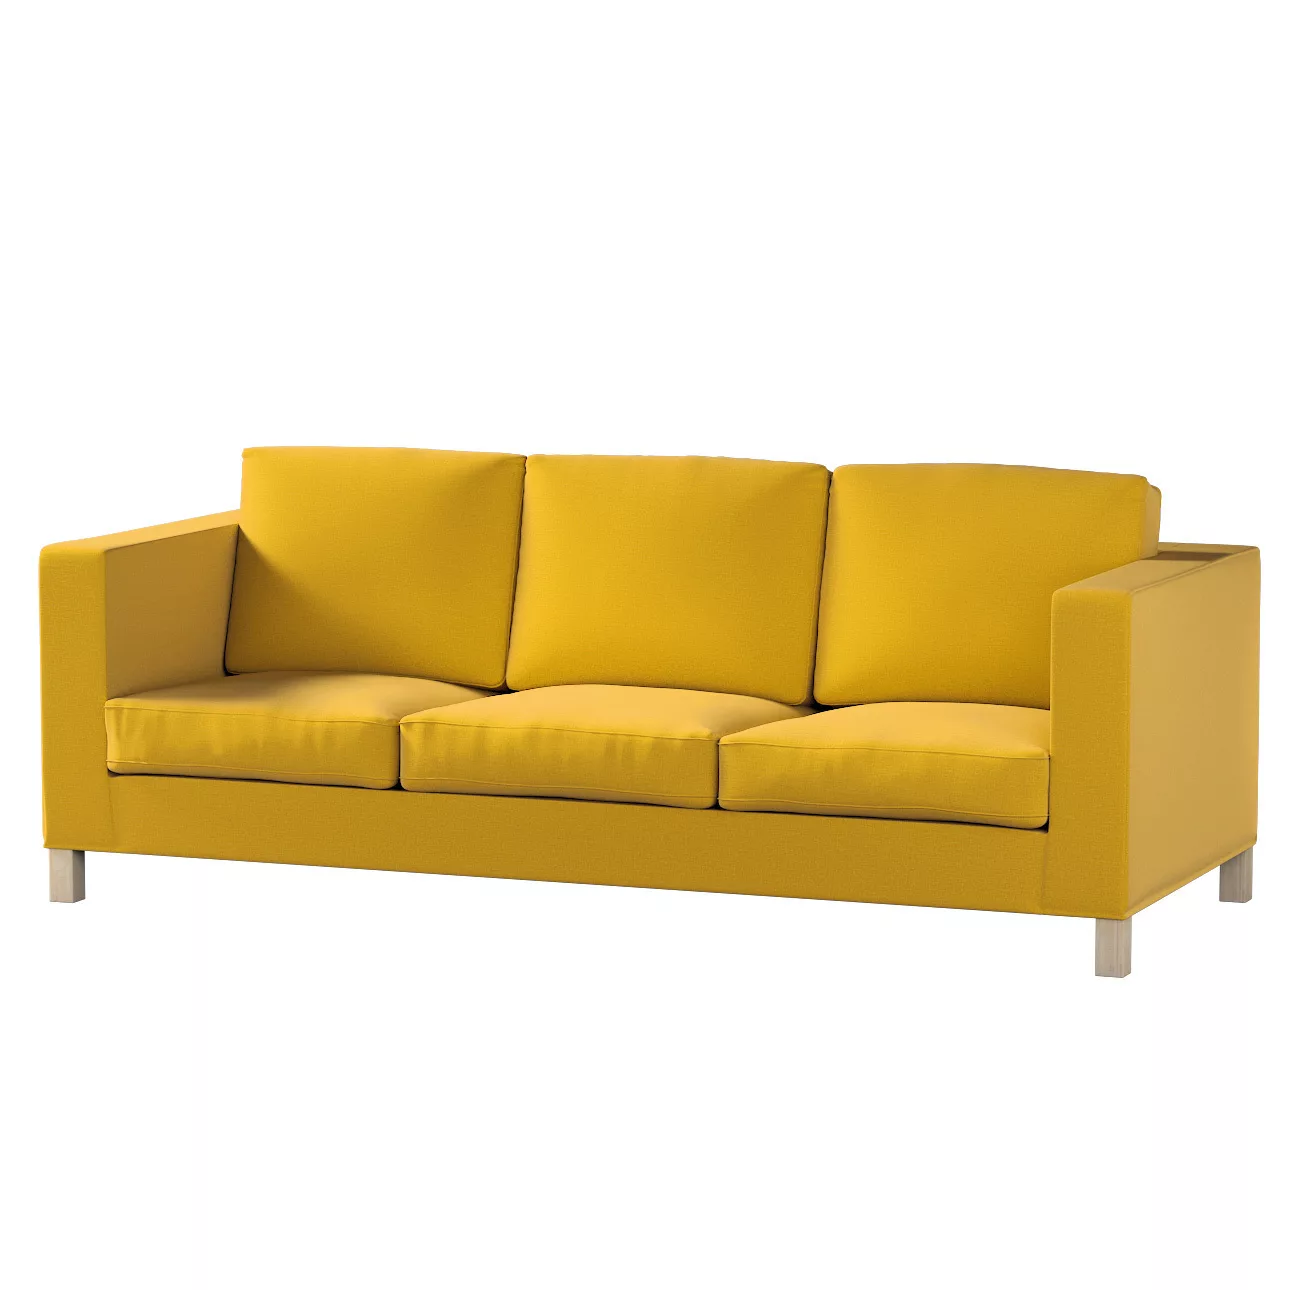 Bezug für Karlanda 3-Sitzer Sofa nicht ausklappbar, kurz, honiggelb, Bezug günstig online kaufen